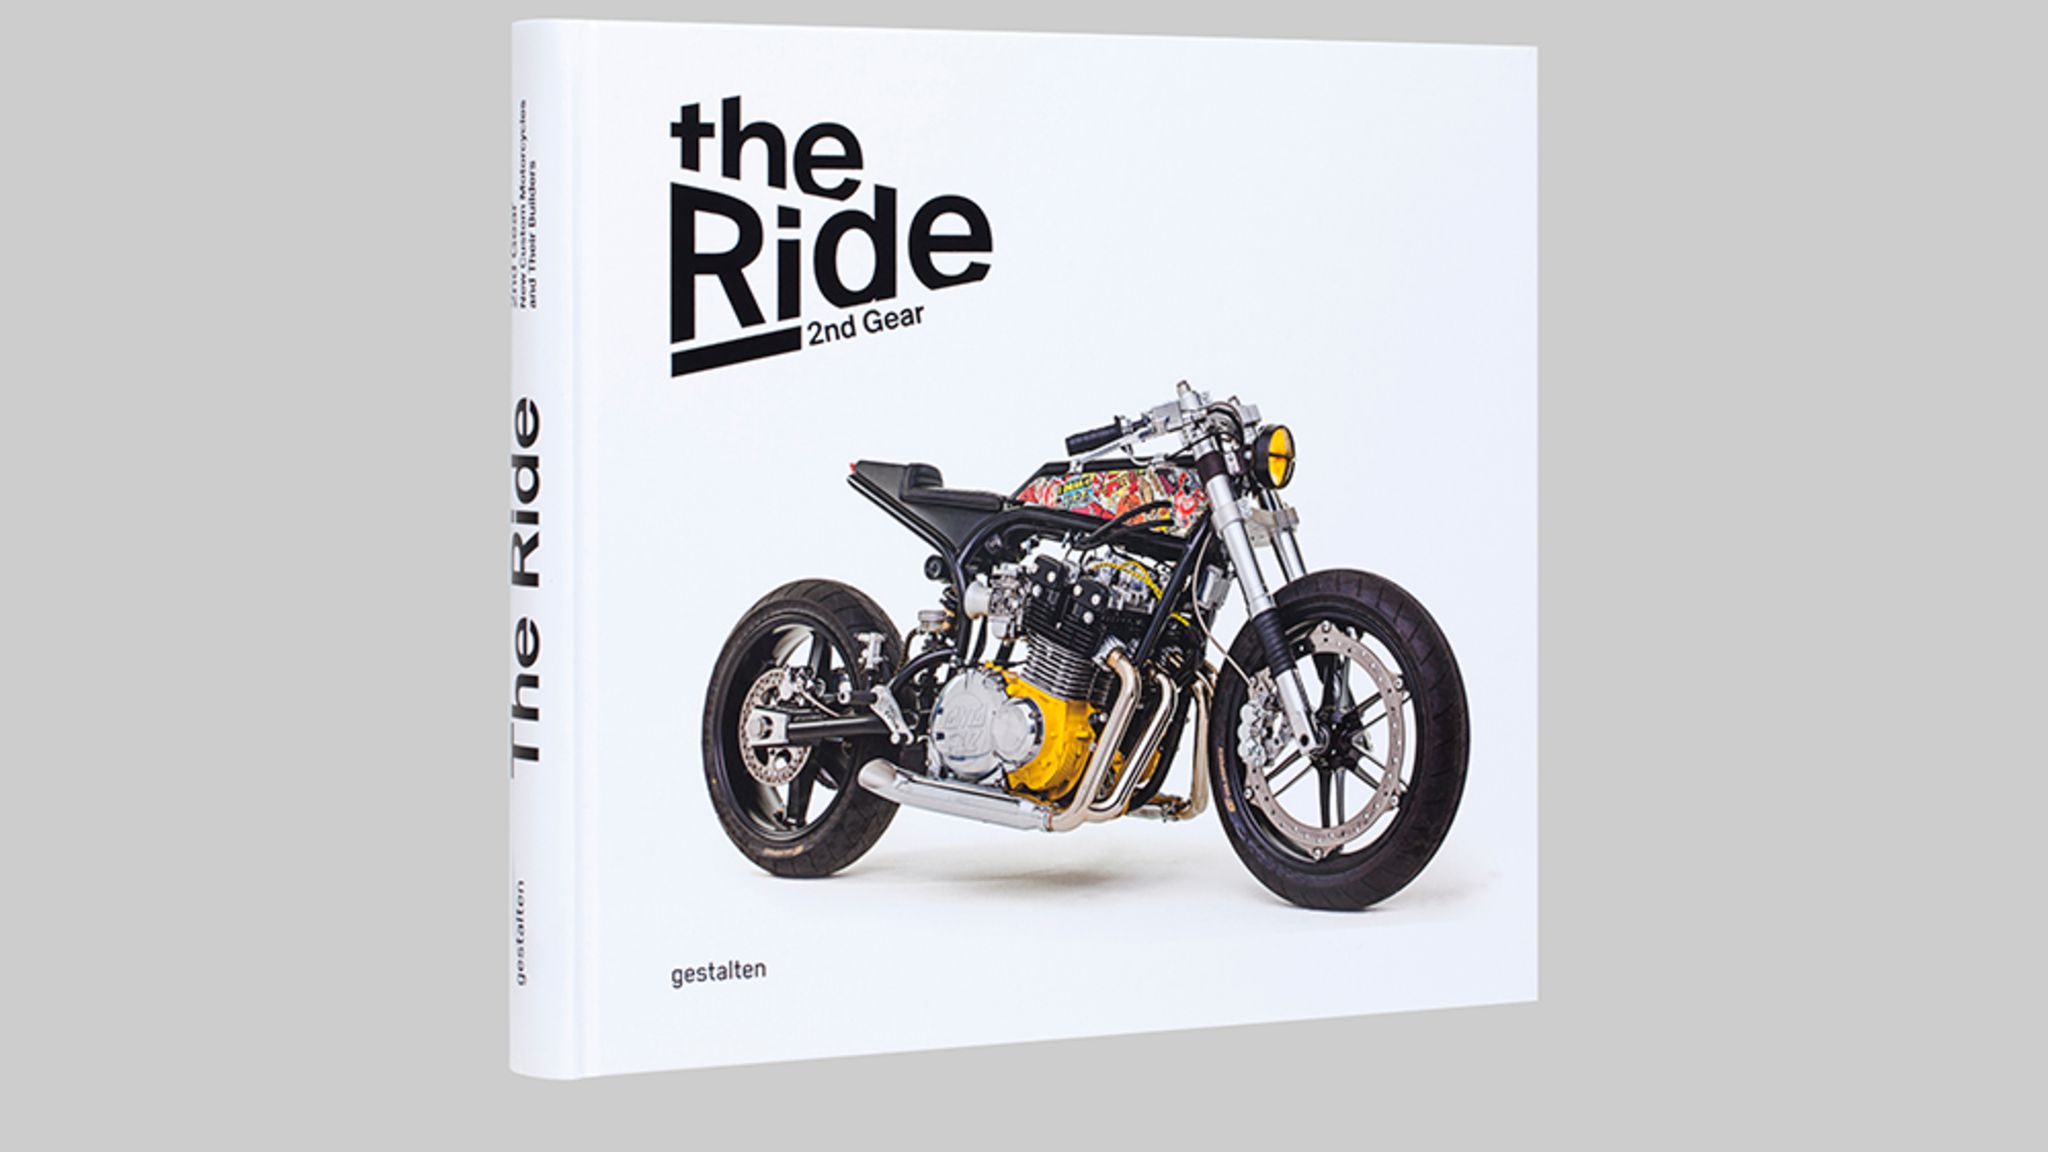 Das pure Motorrad-Feeling – die wilde Welt der Custom Bike